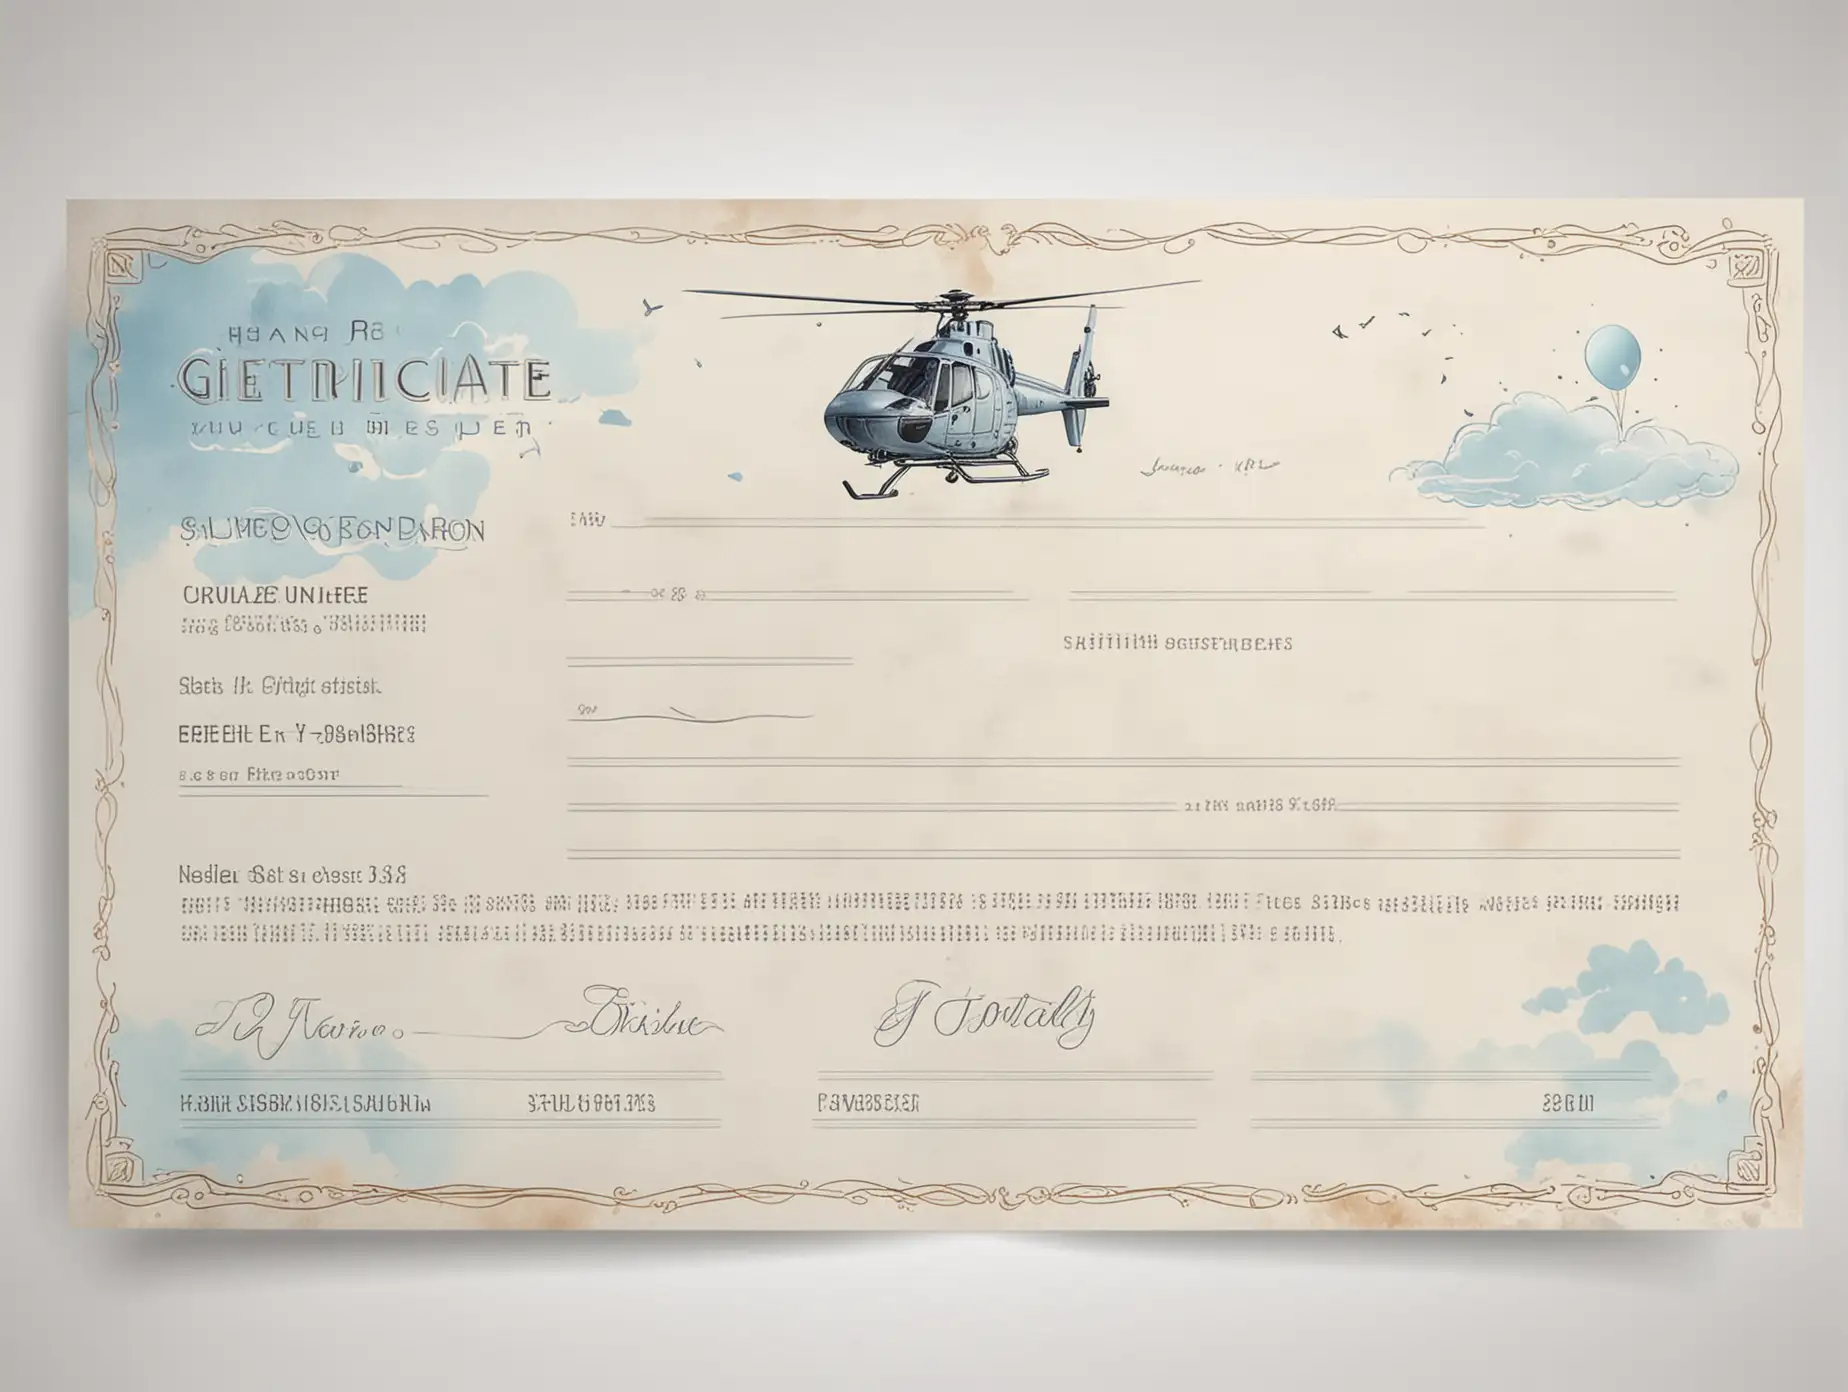 Дизайн подарочного сертификата с элементами вертолёта неба. Выполнен в светлых небесных нежных тонах. Без текста на белом фоне
